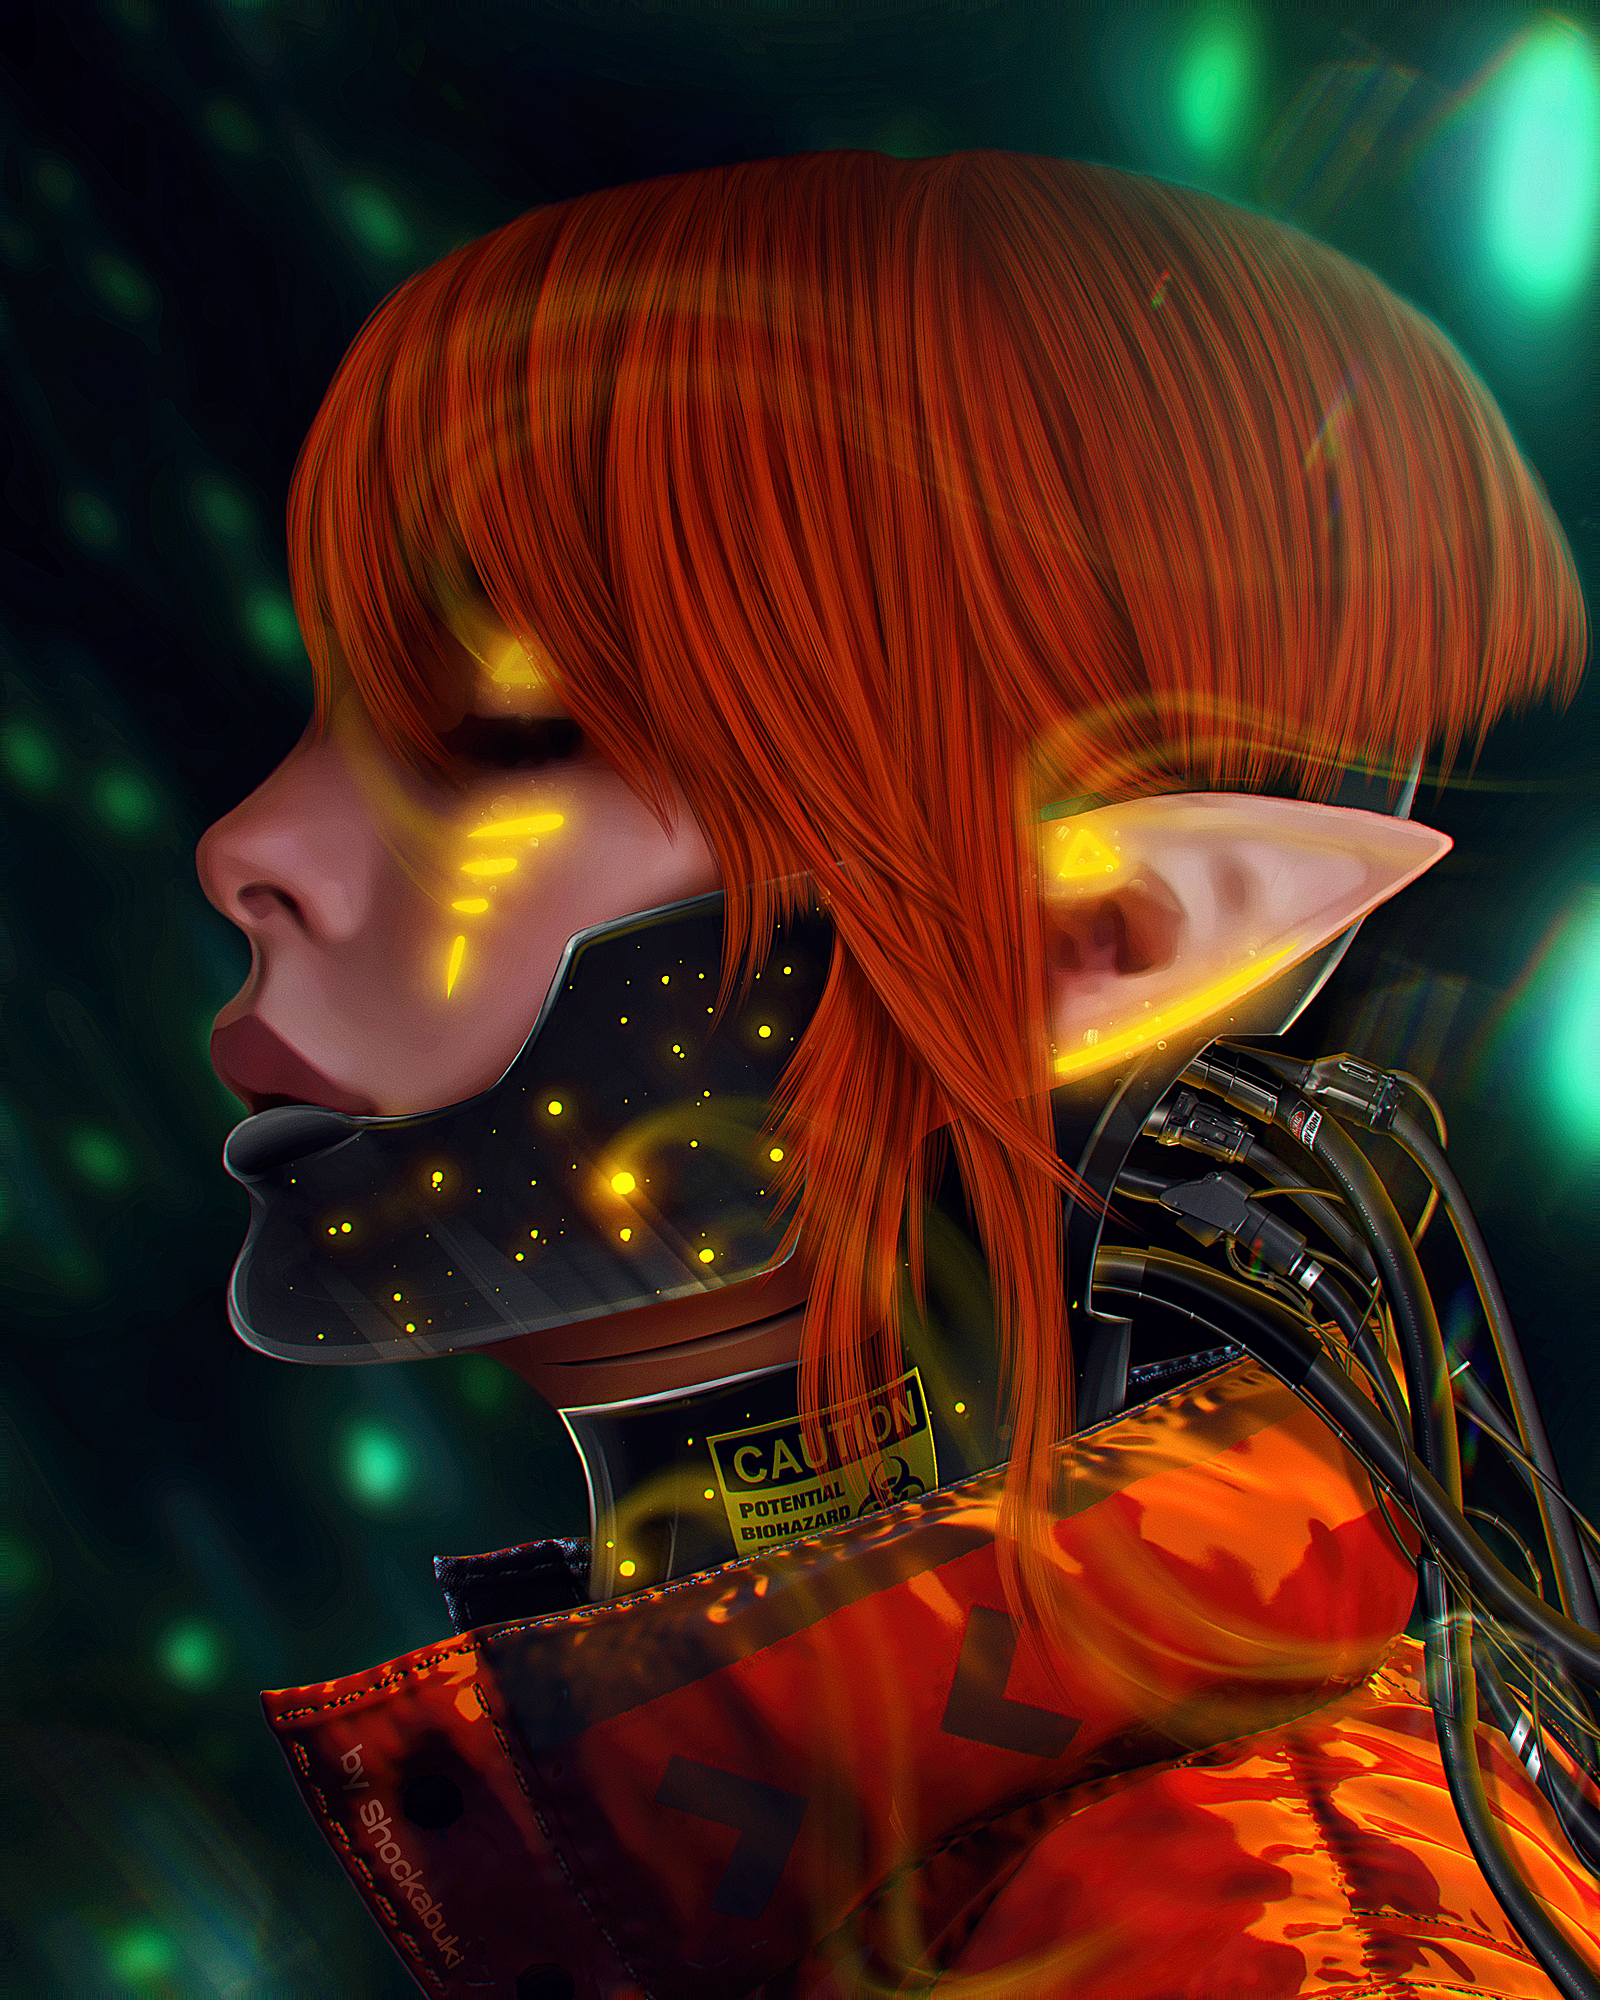 ArtStation Fan Art Science Fiction Cyberpunk Elve Mask Cyborg Portrait Redhead Artwork Digital Art G 1600x2000